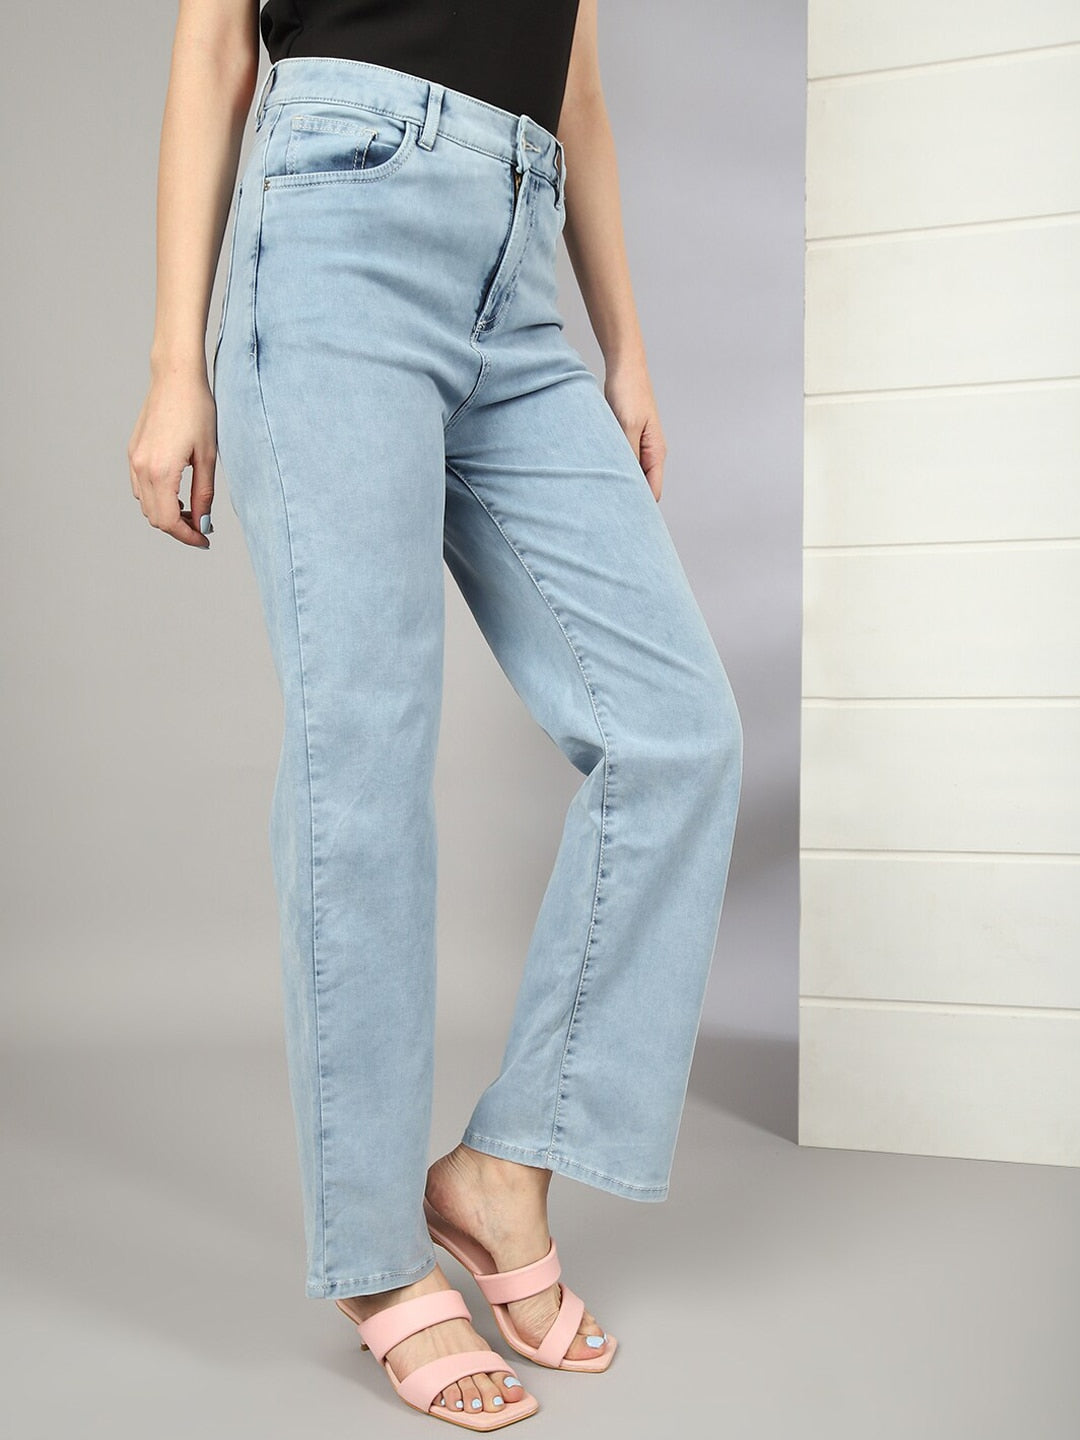 Shop Women Wide Leg Jeans With Tie N Dye Detail Online.